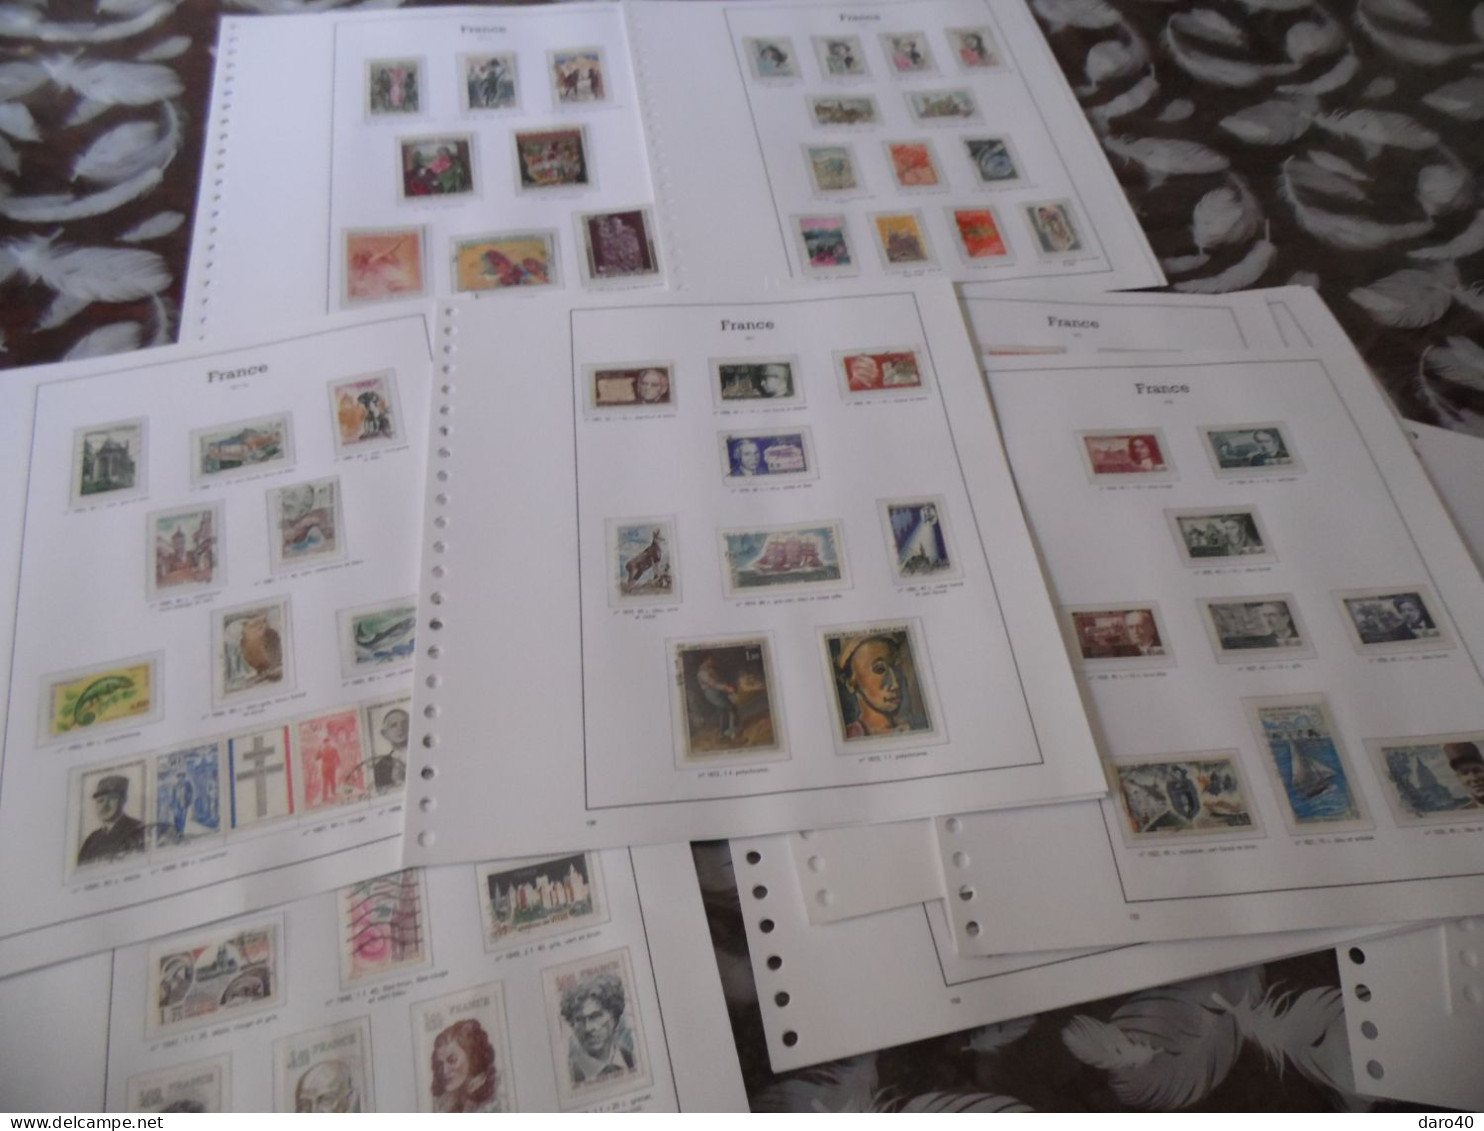 Sur des feuilles yvert et tellier timbres France neuf et obl de 1970 à 1978 et de 1991 à 1994 sous pochette transparente